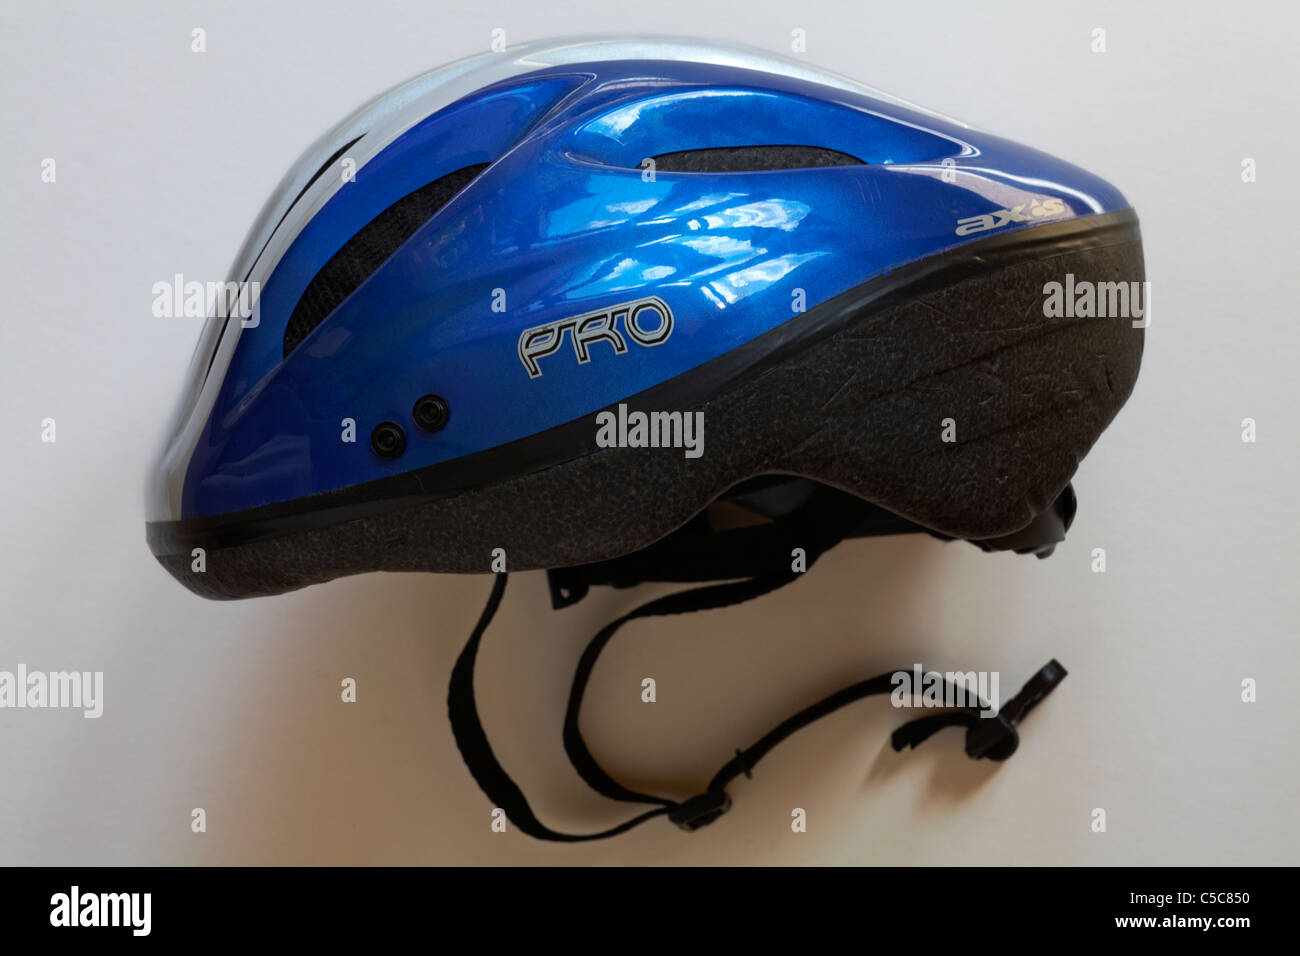 Pro blau Fahrrad Helm isoliert auf weißem Hintergrund Stockfoto